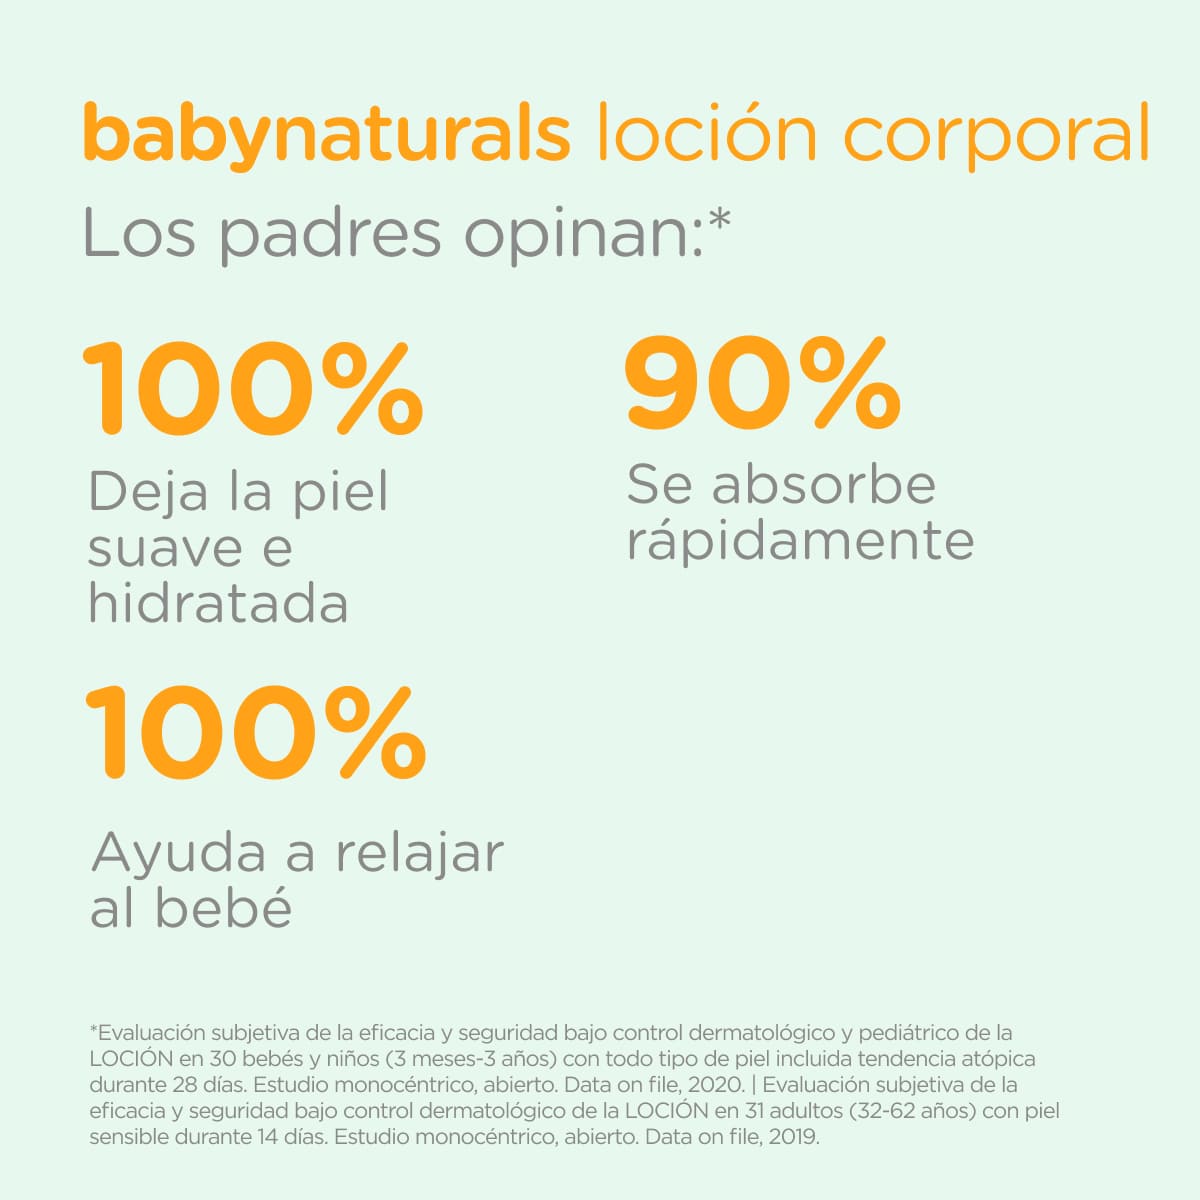 BabyNaturals